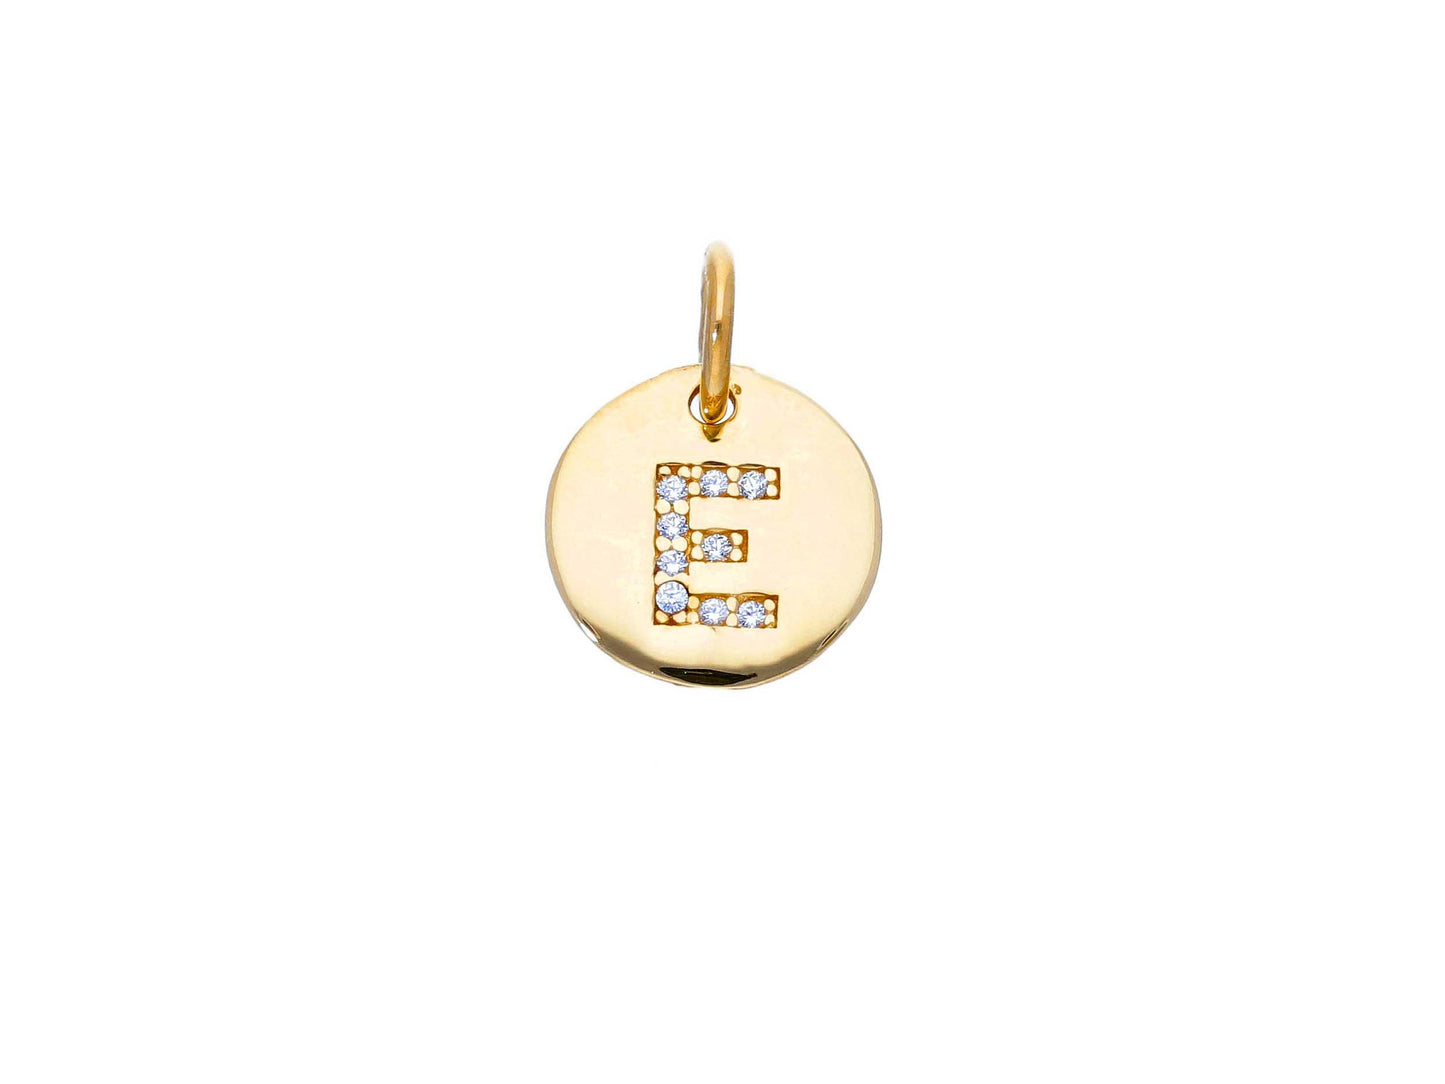 Gold pendant with pavé zircon Letter